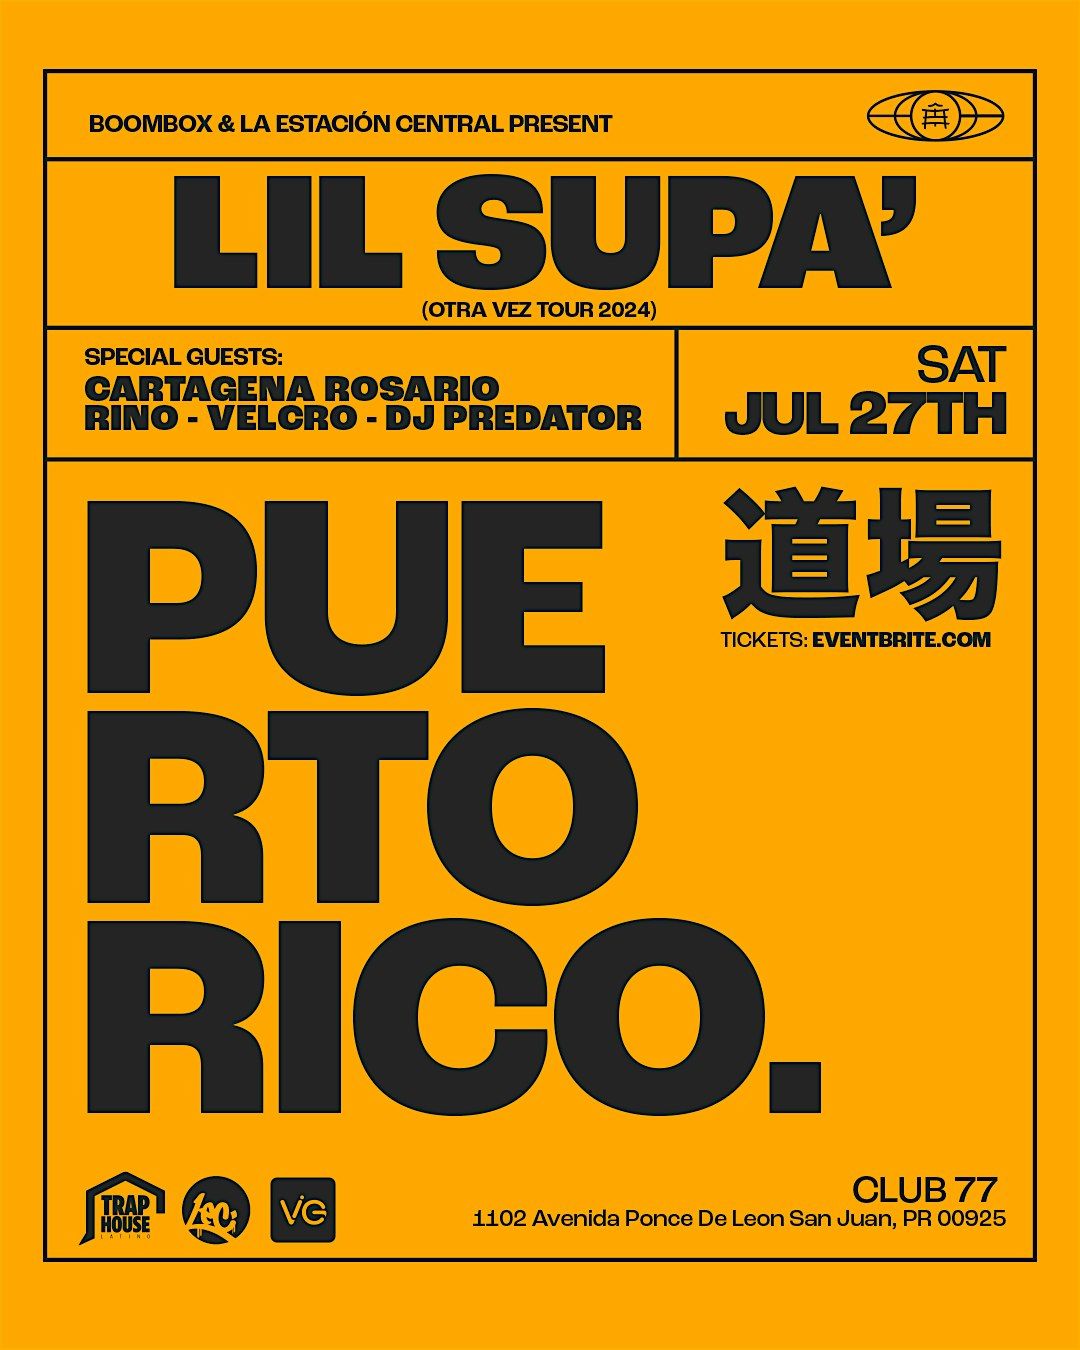 La Estaci\u00f3n Central presenta : Lil Supa en Puerto Rico